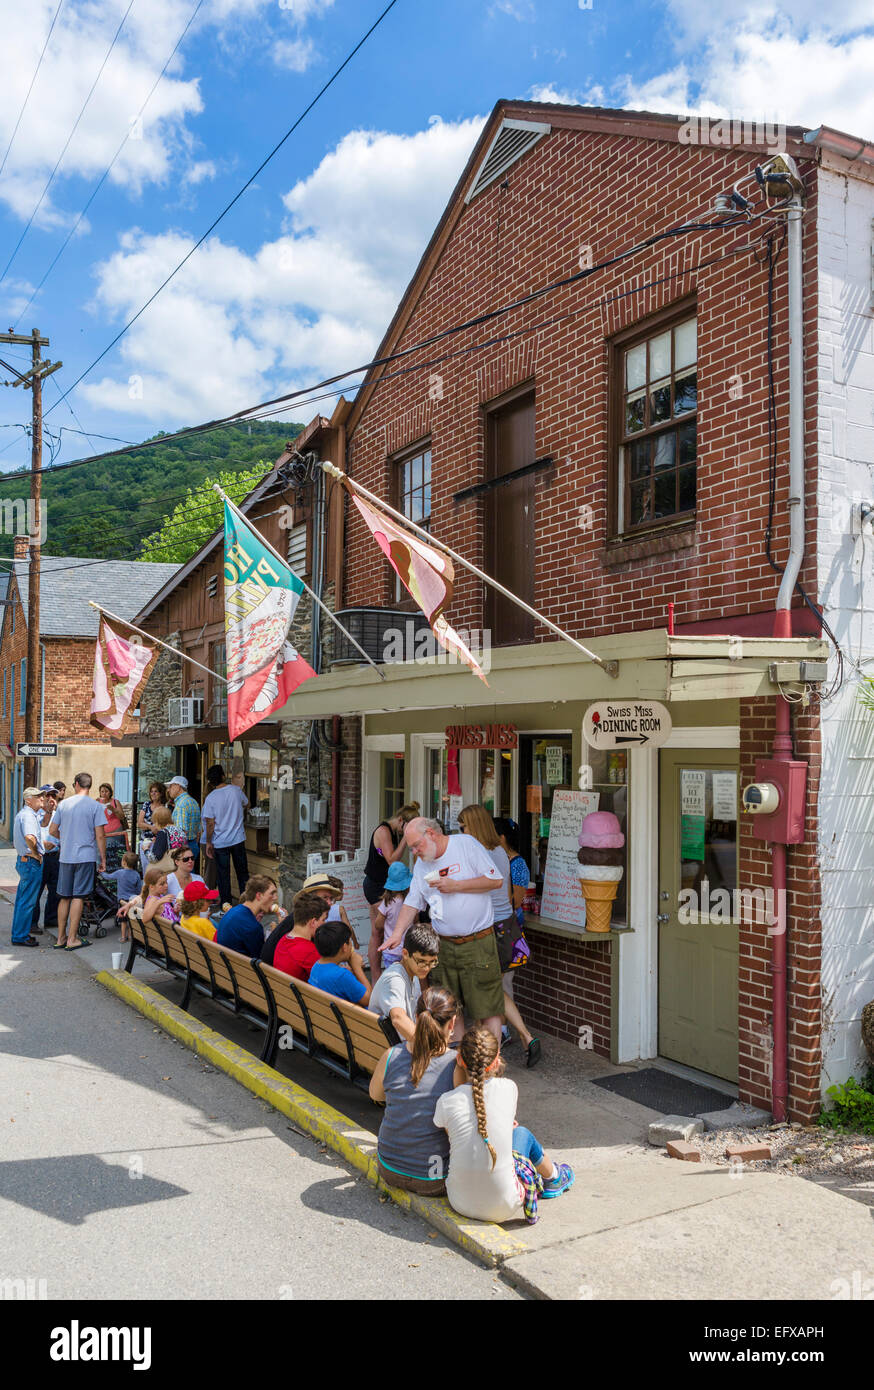 Turisti al di fuori di un ristorante e gelateria nel centro storico di harpers Ferry, West Virginia, USA Foto Stock